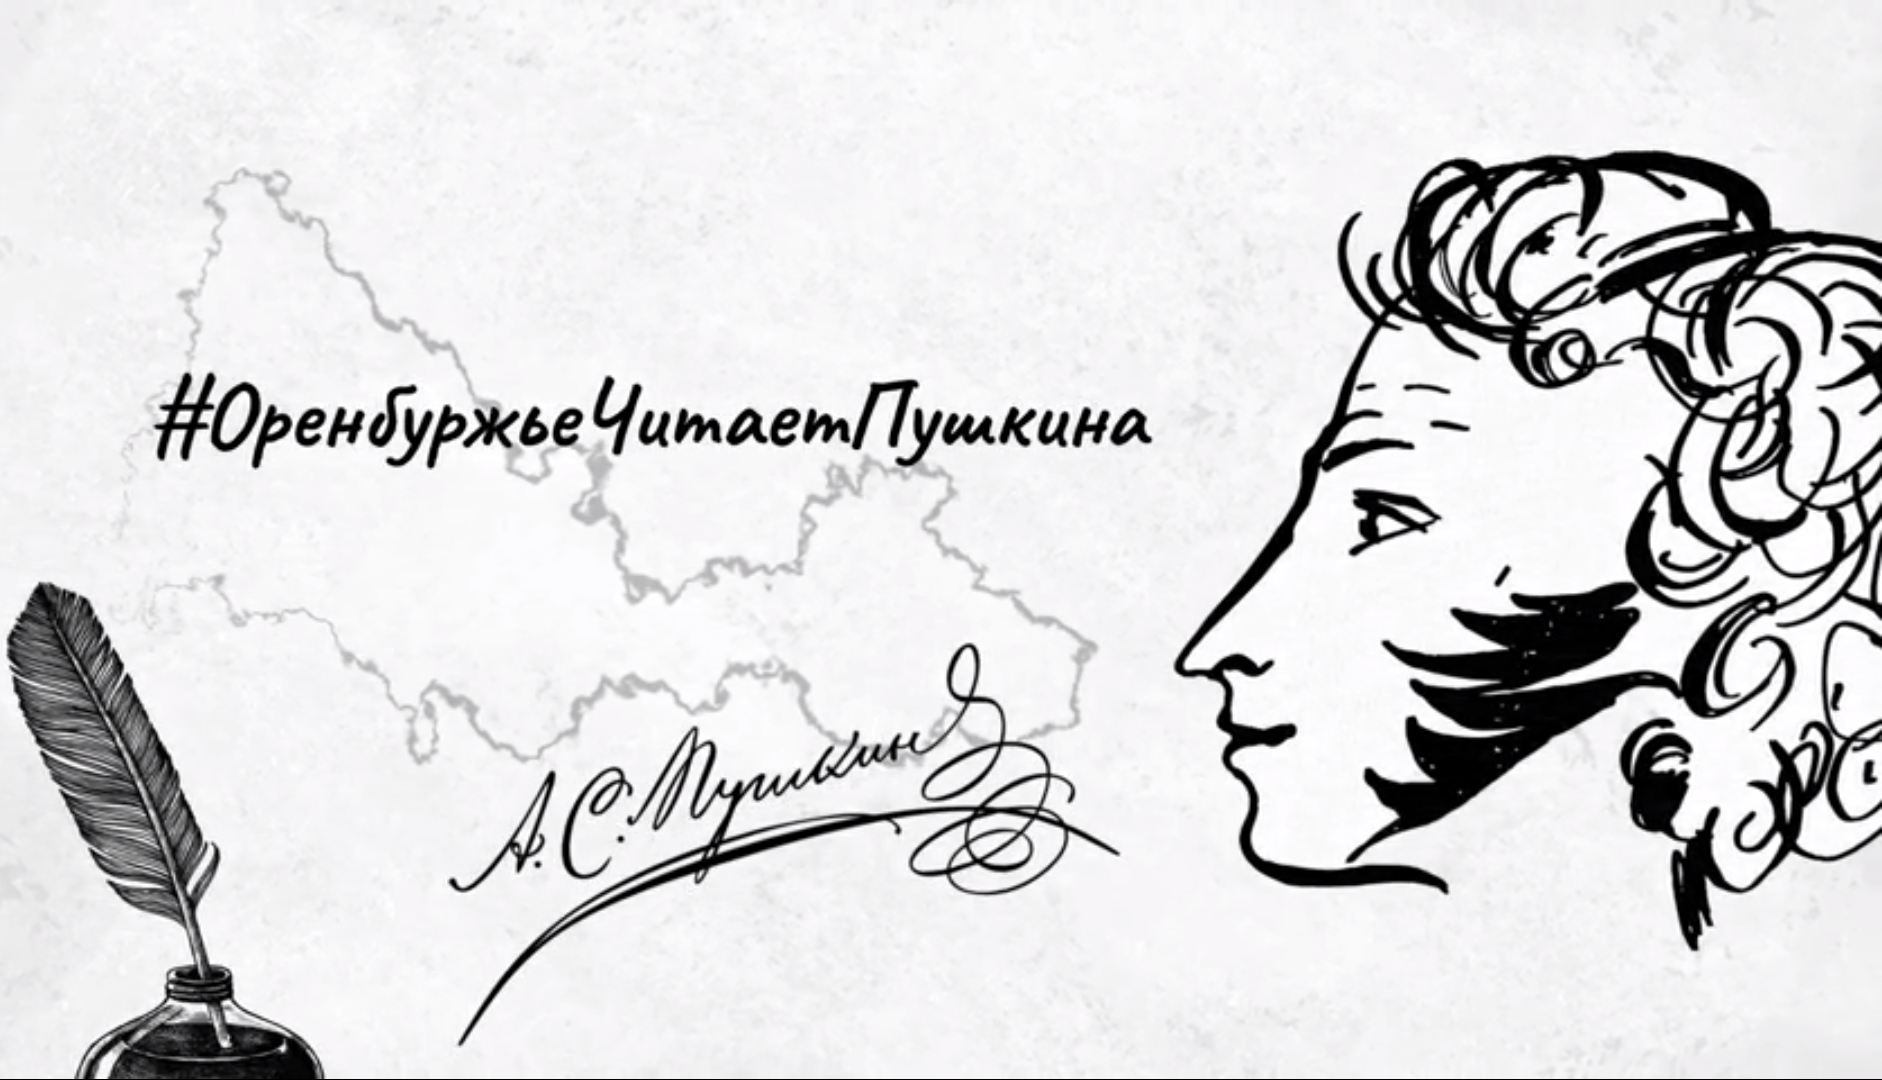 В Оренбуржье стартует литературная акция, посвященная 225-летию со дня рождения А.С. Пушкина